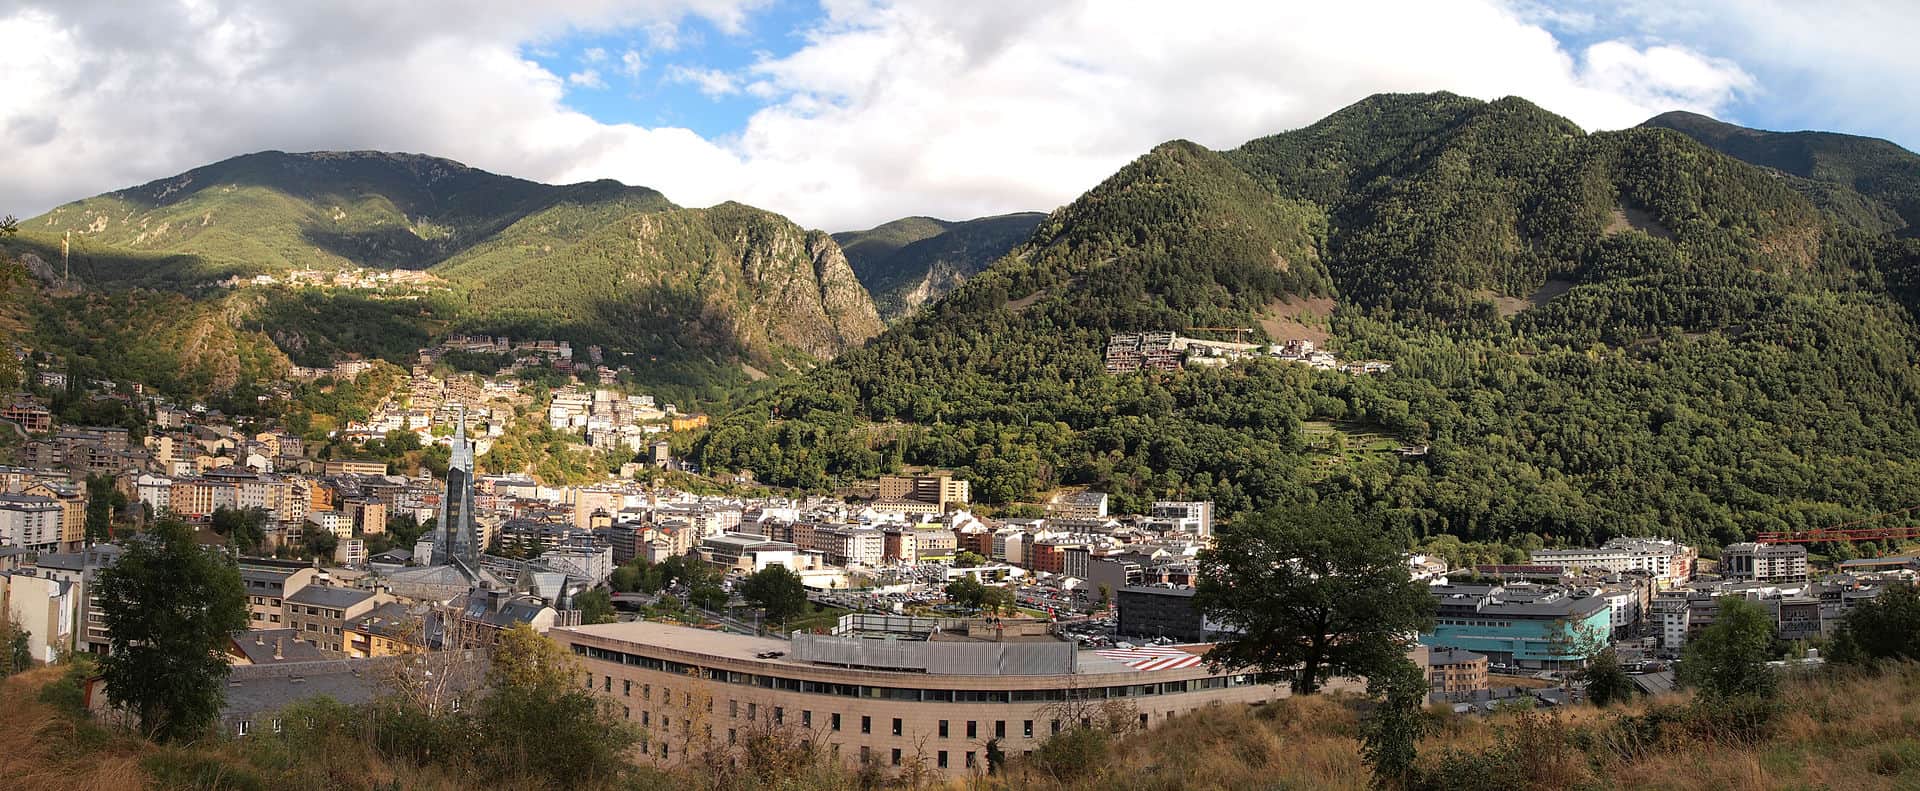 Andorra la Vella: Capital city of Andorra